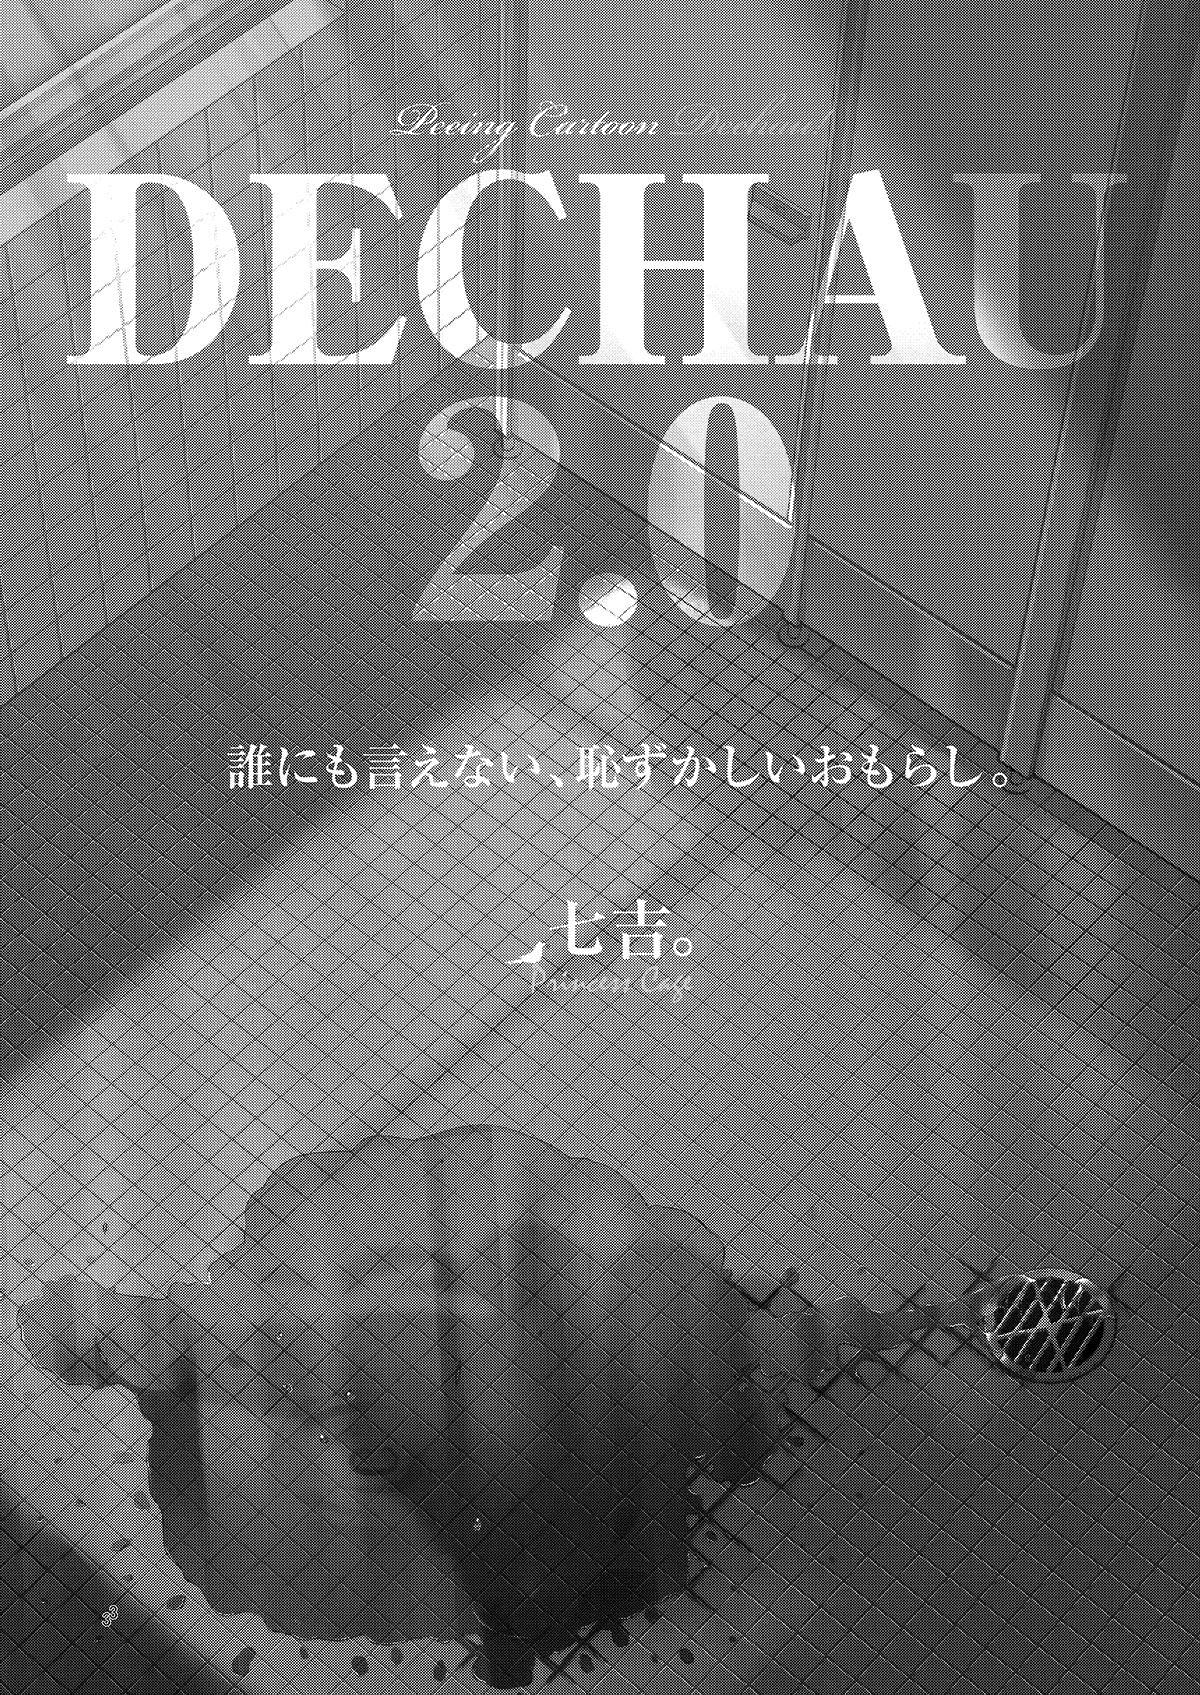 Petera DECHAU 2.0 - Original Retro - Picture 2